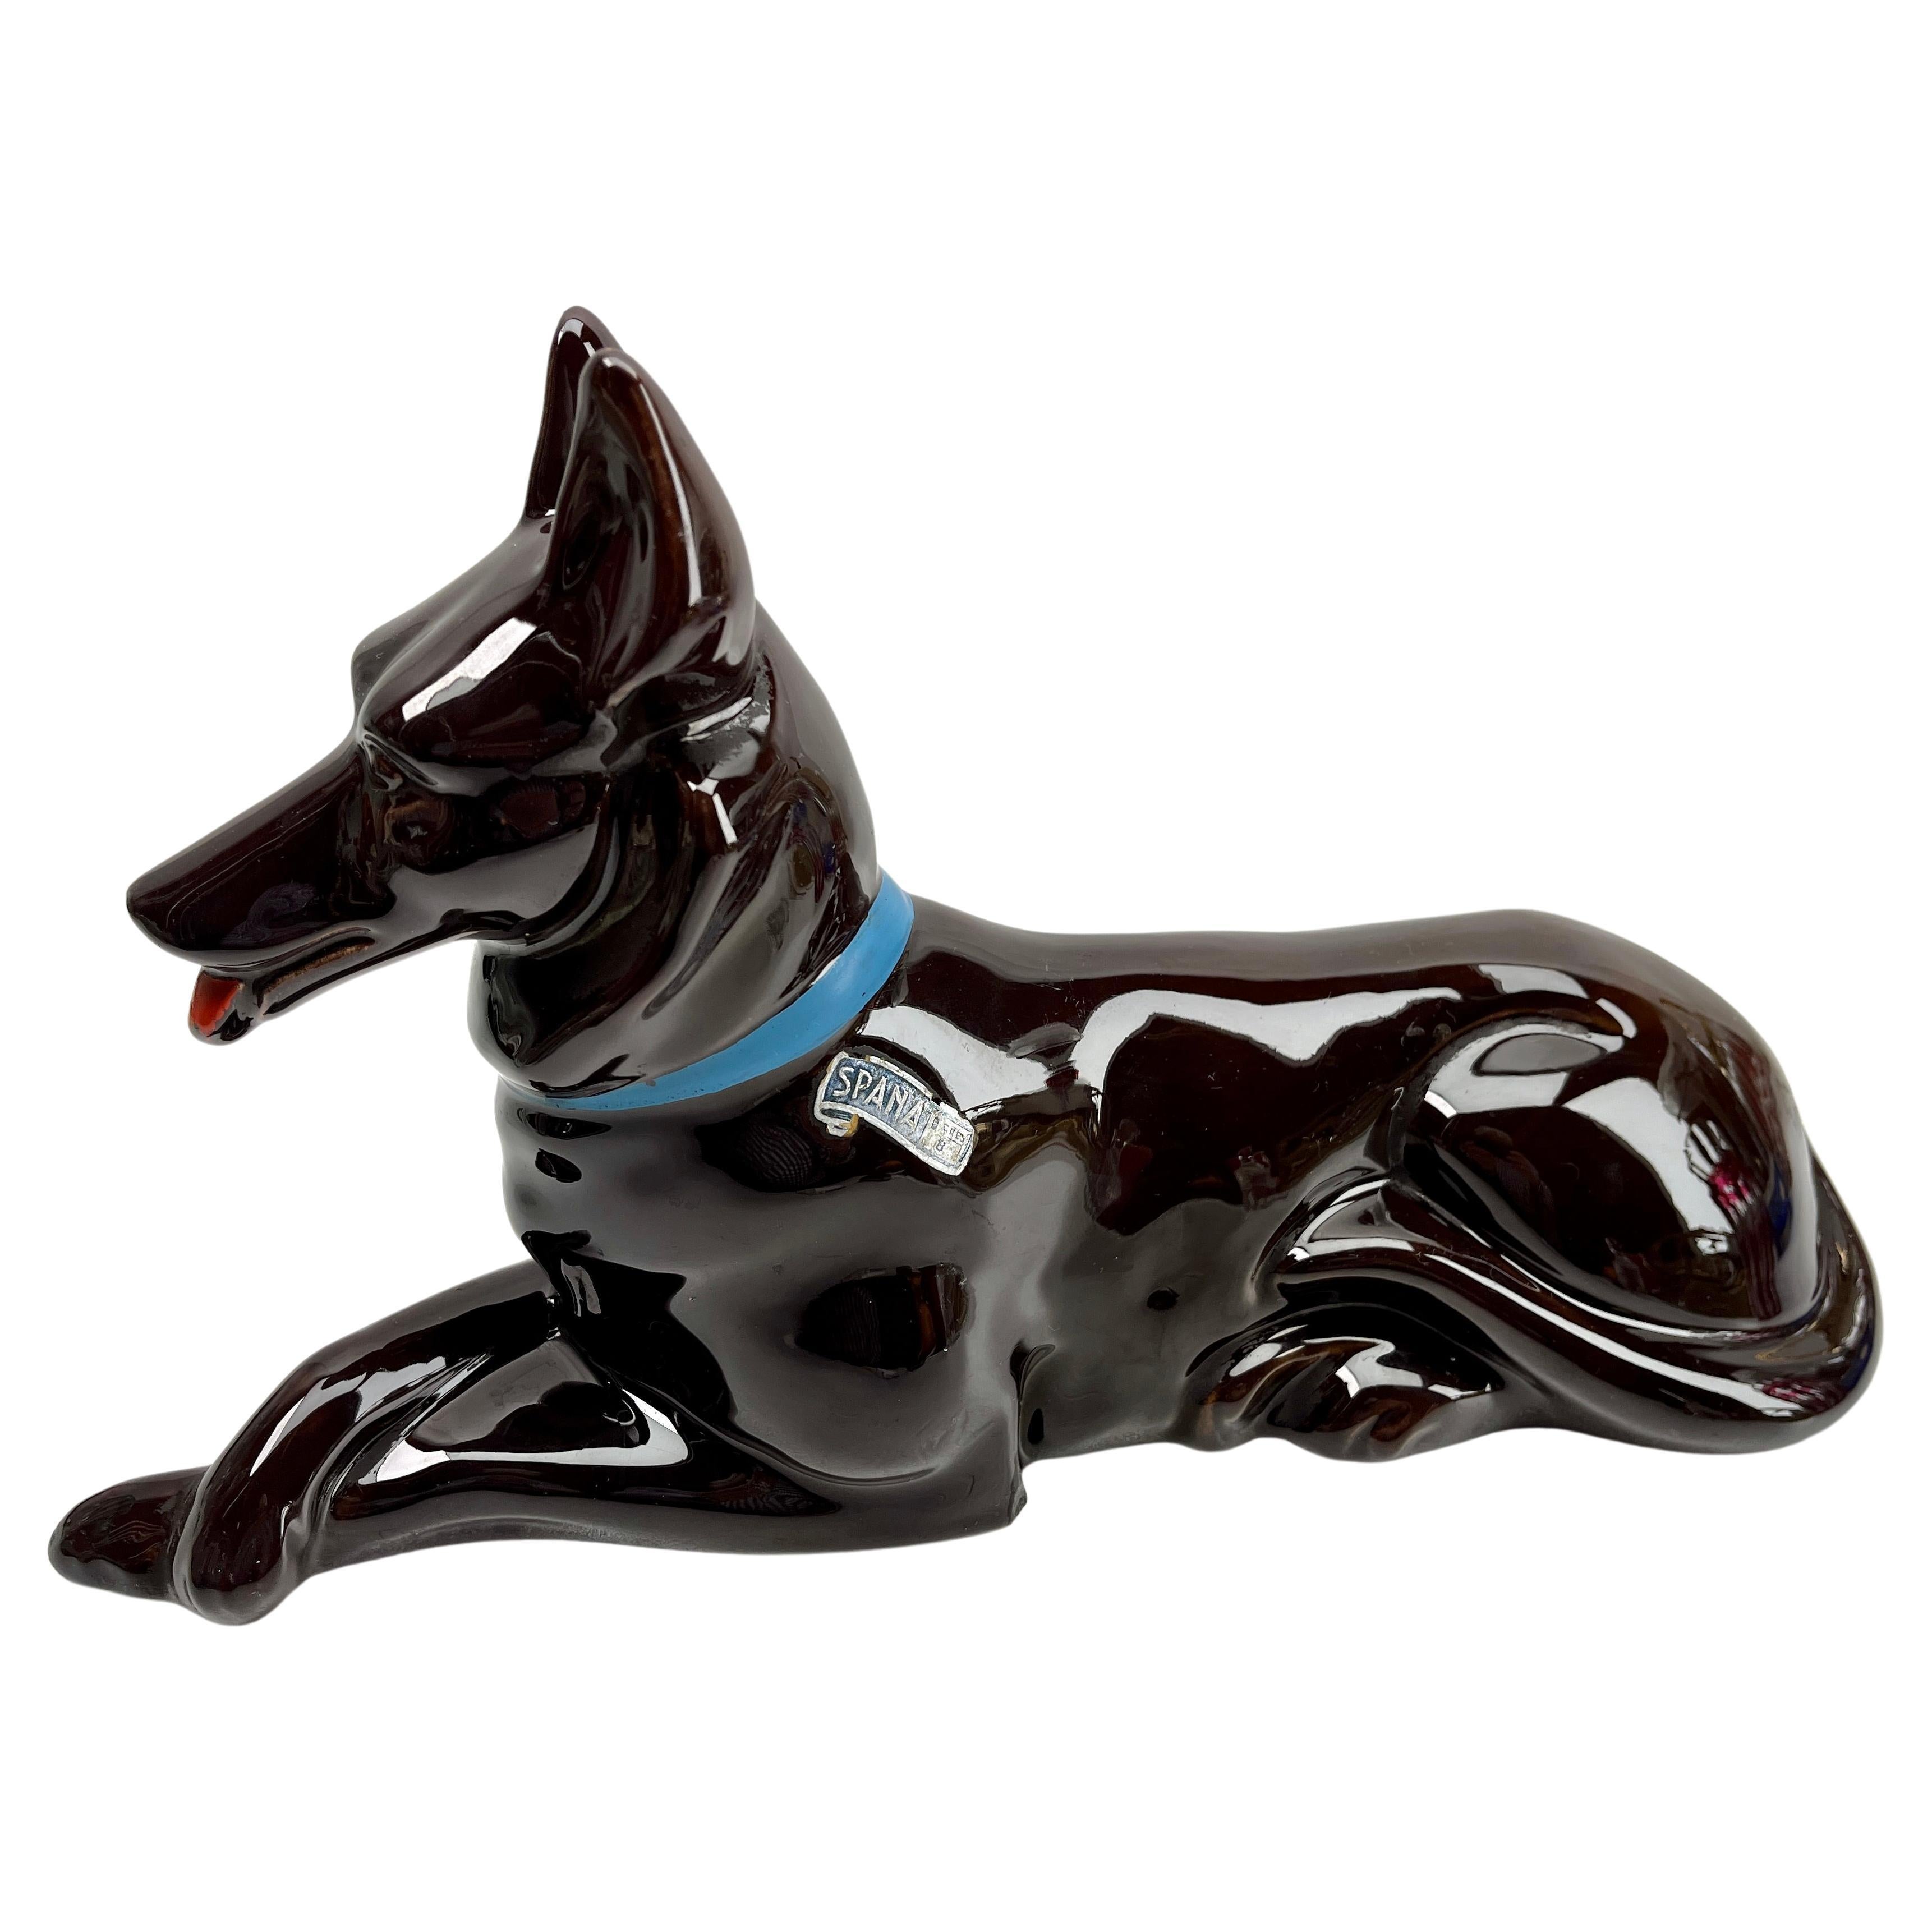 Statue de chien de berger en porcelaine de style Vintage avec étiquette Spana en vente